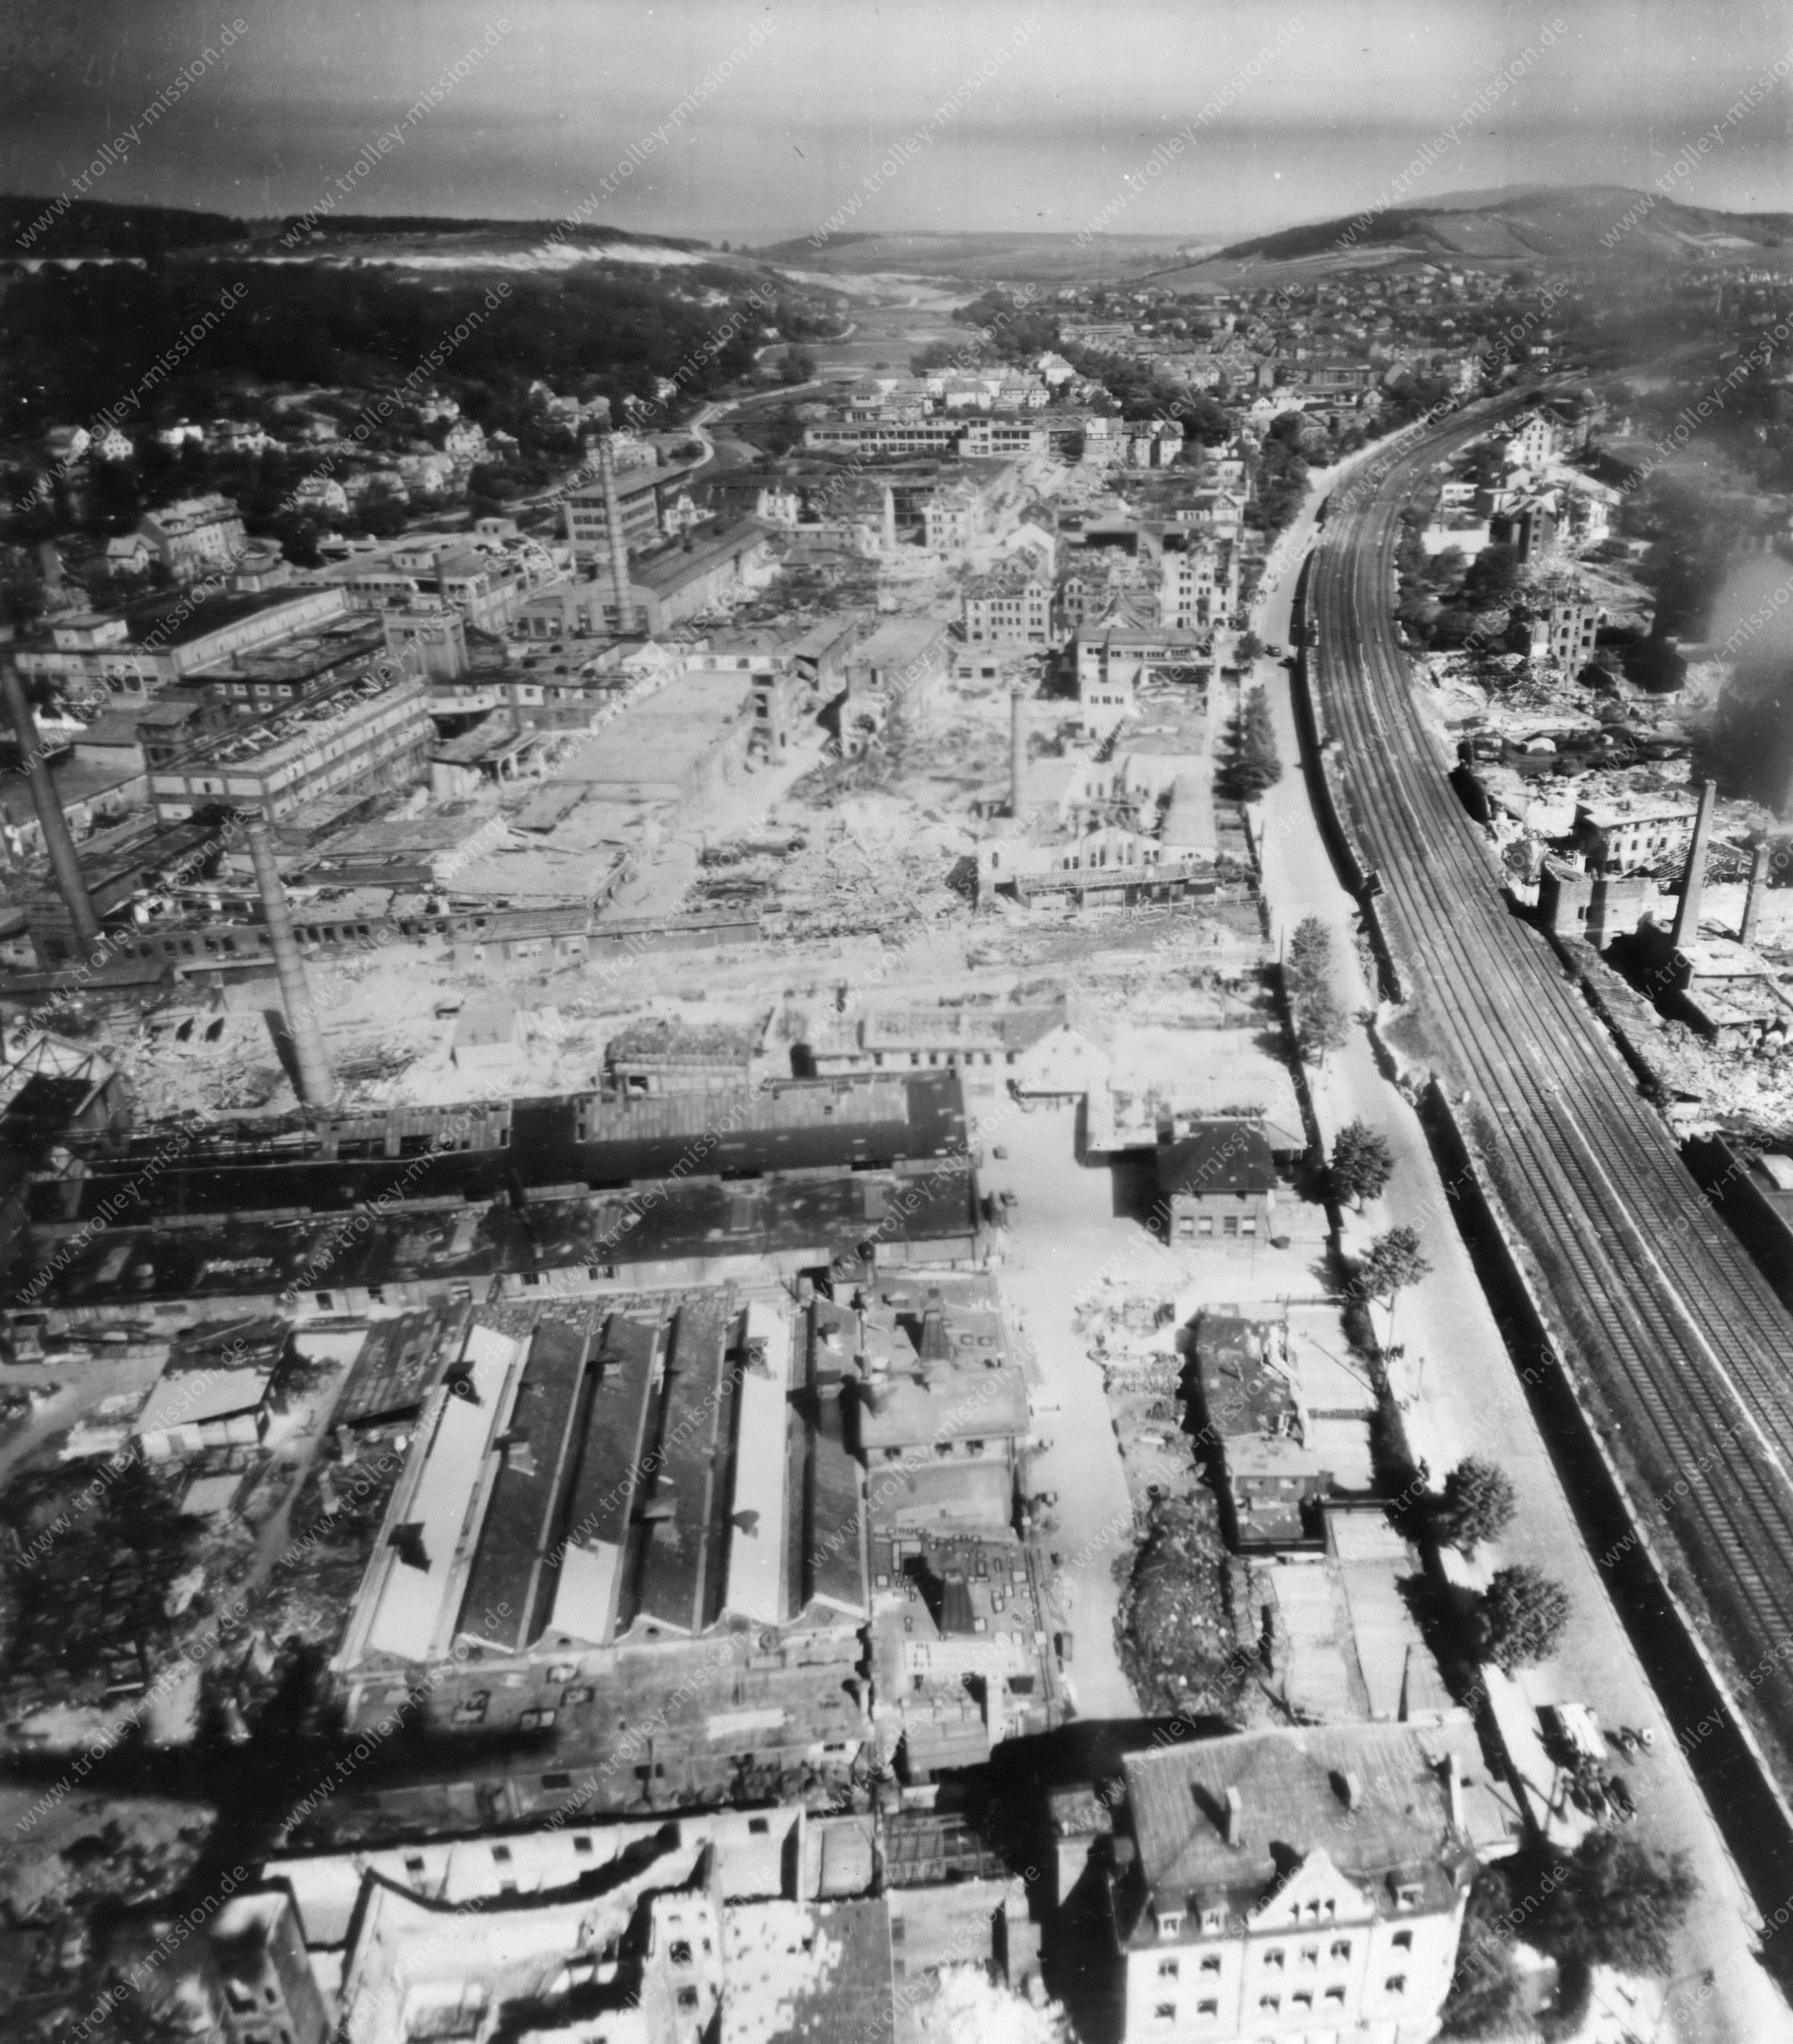 Automobilwerk Eisenach nach den Luftangriffen im Zweiten Weltkrieg